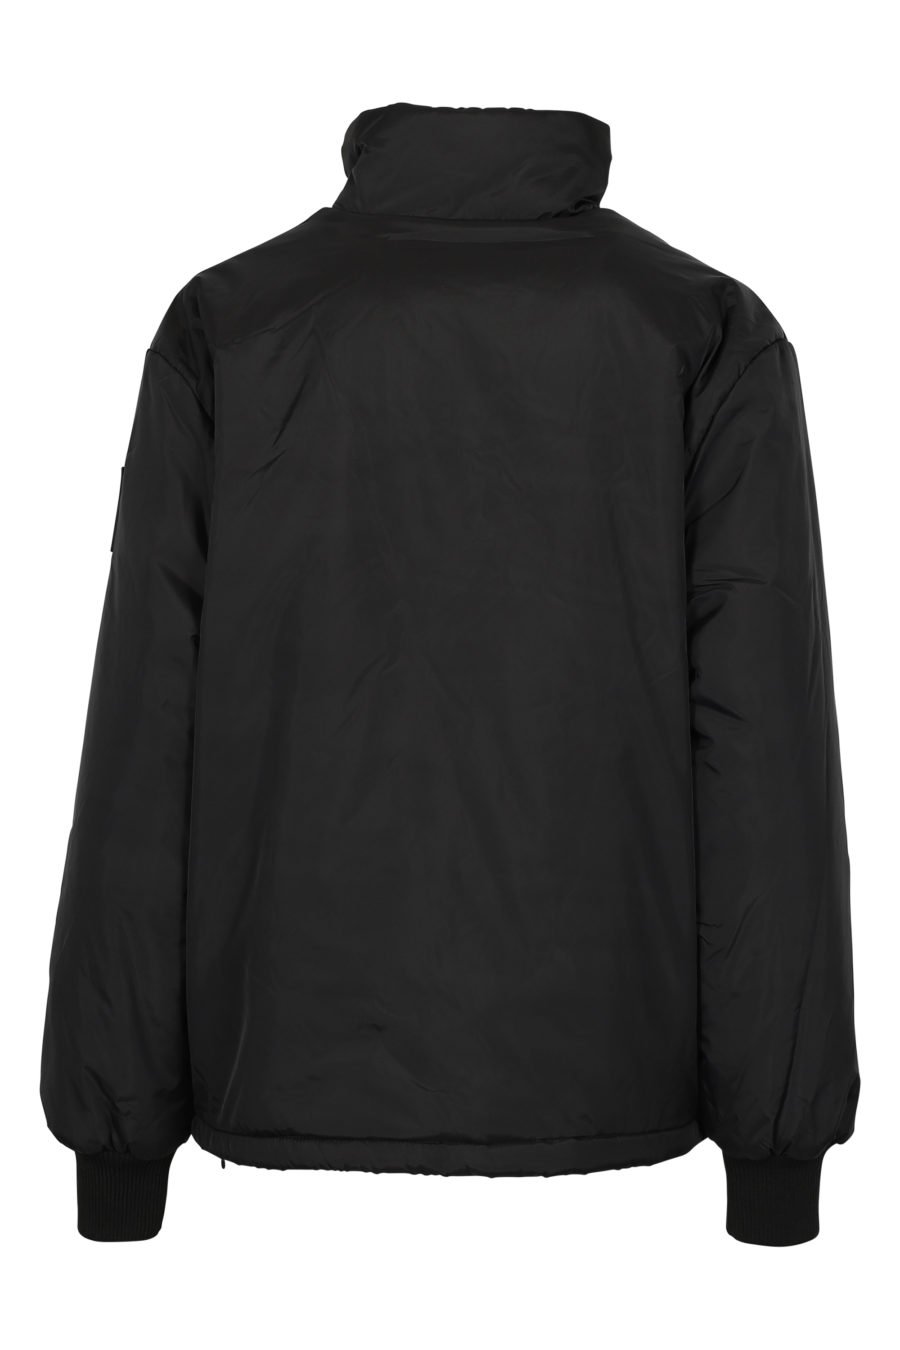 Unisex black jacket - IMG 3107